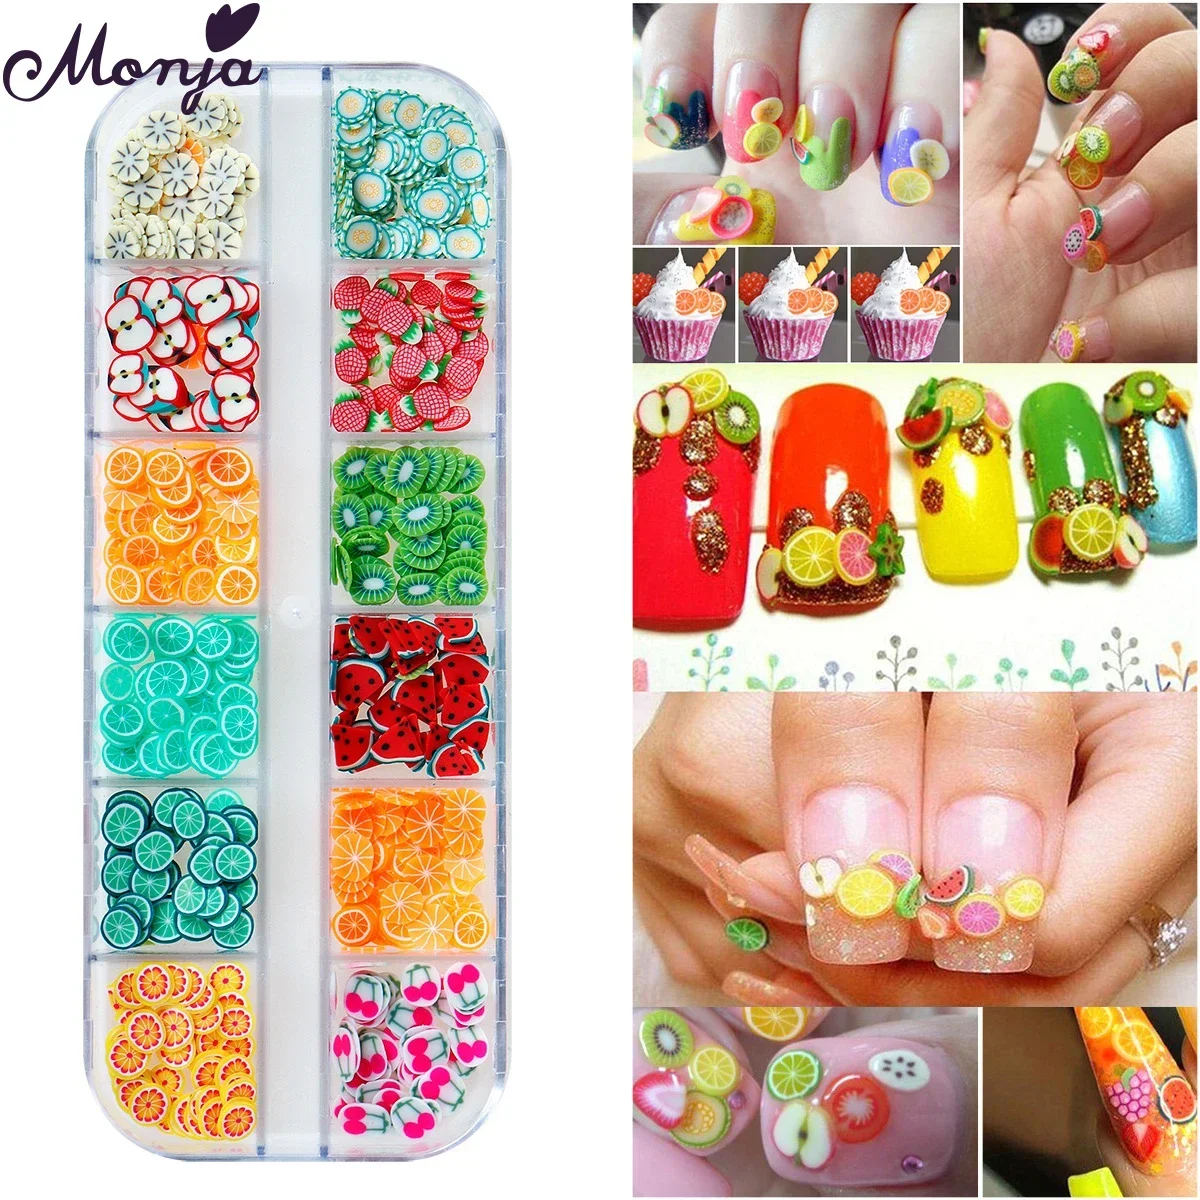 

Monja 2 коробки украшения для ногтей 3D прекрасные фрукты полимерные ломтики Шарм Стиль красочный дизайн чешуйки салон аксессуары для самостоятельного маникюра